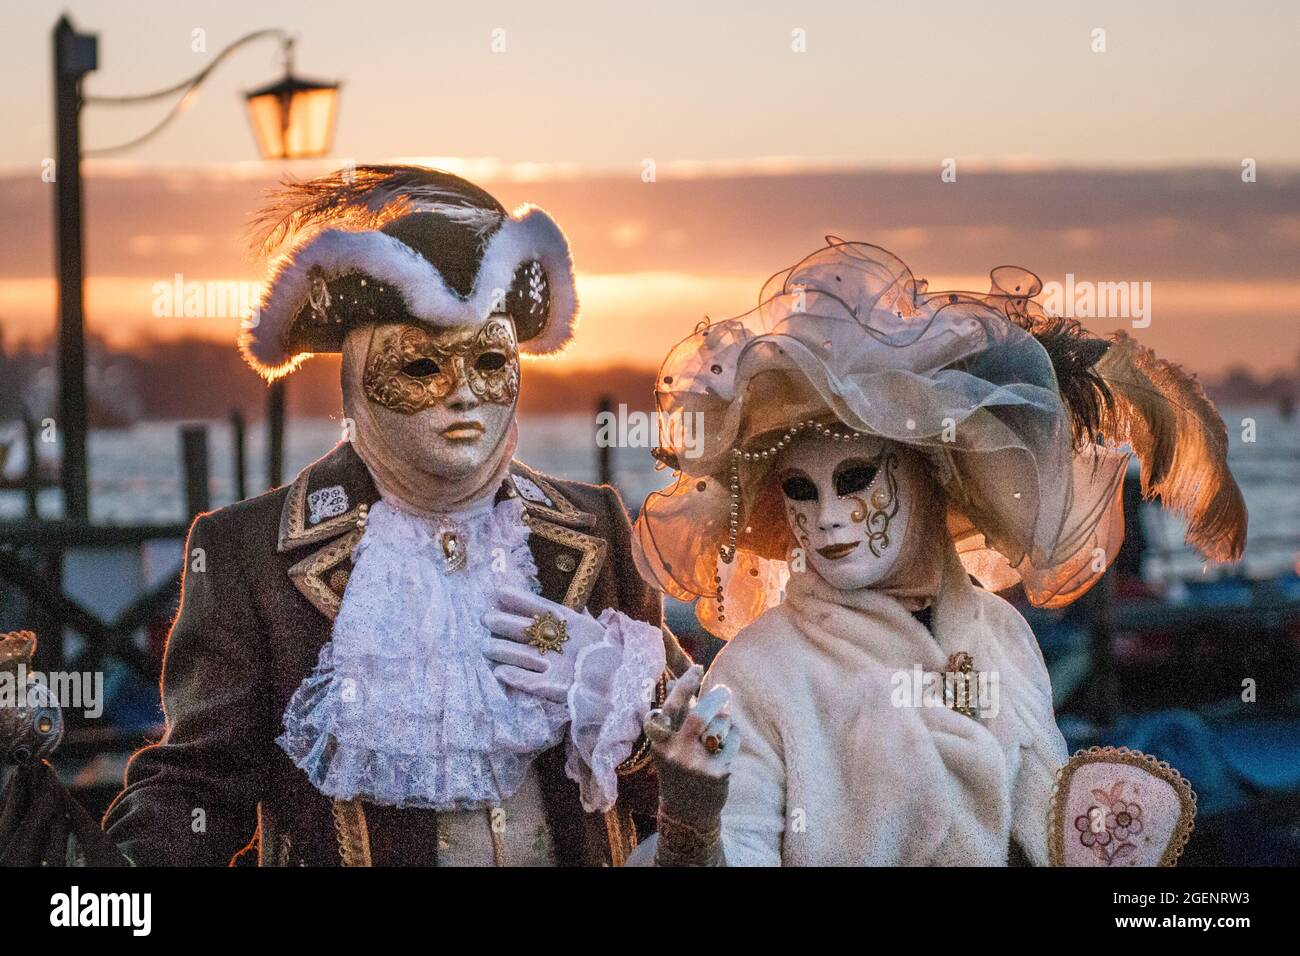 Maschio e femmina con maschere, cappelli e costumi di carnevale in piedi  accanto all'acqua al tramonto a Venezia Foto stock - Alamy